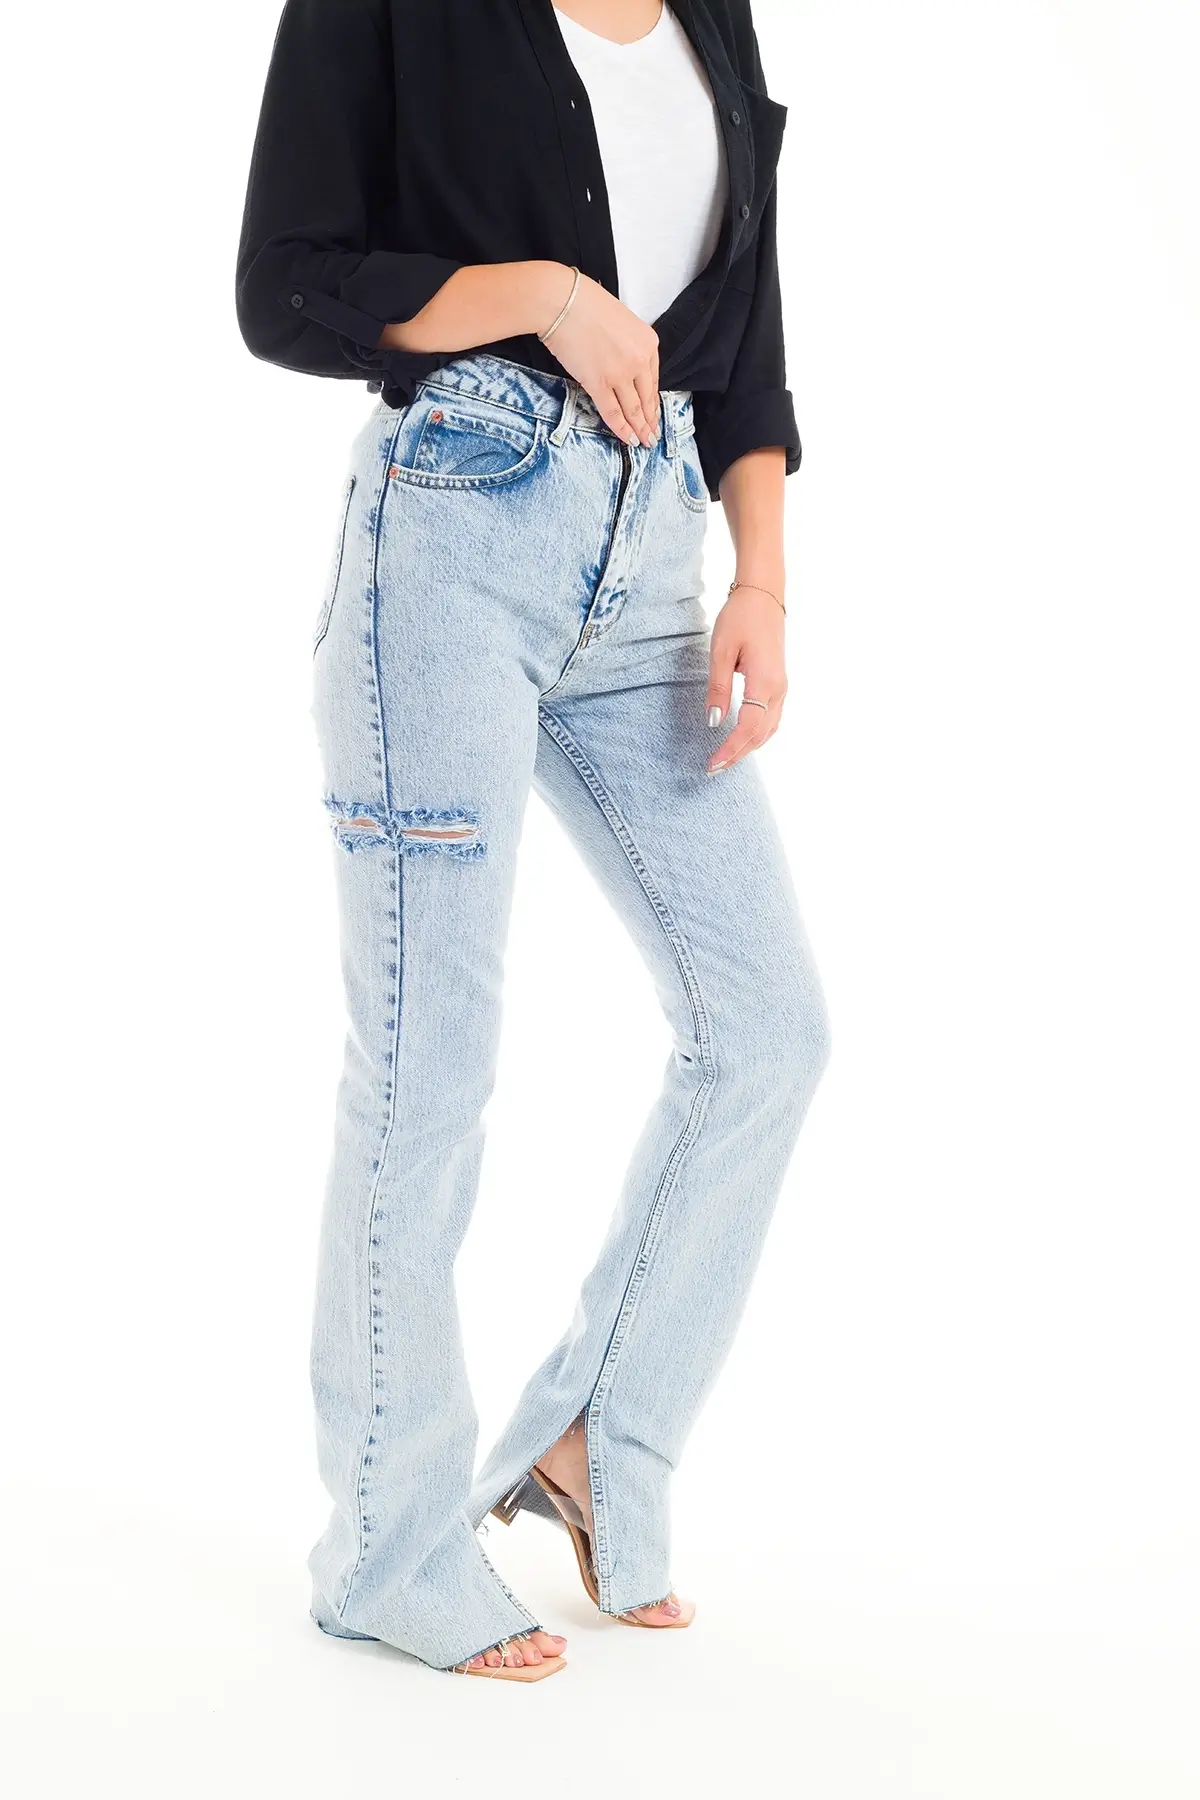 ZDN 9236 Yırtmaç Paçalı Düz Model Kadın Kot Pantolon